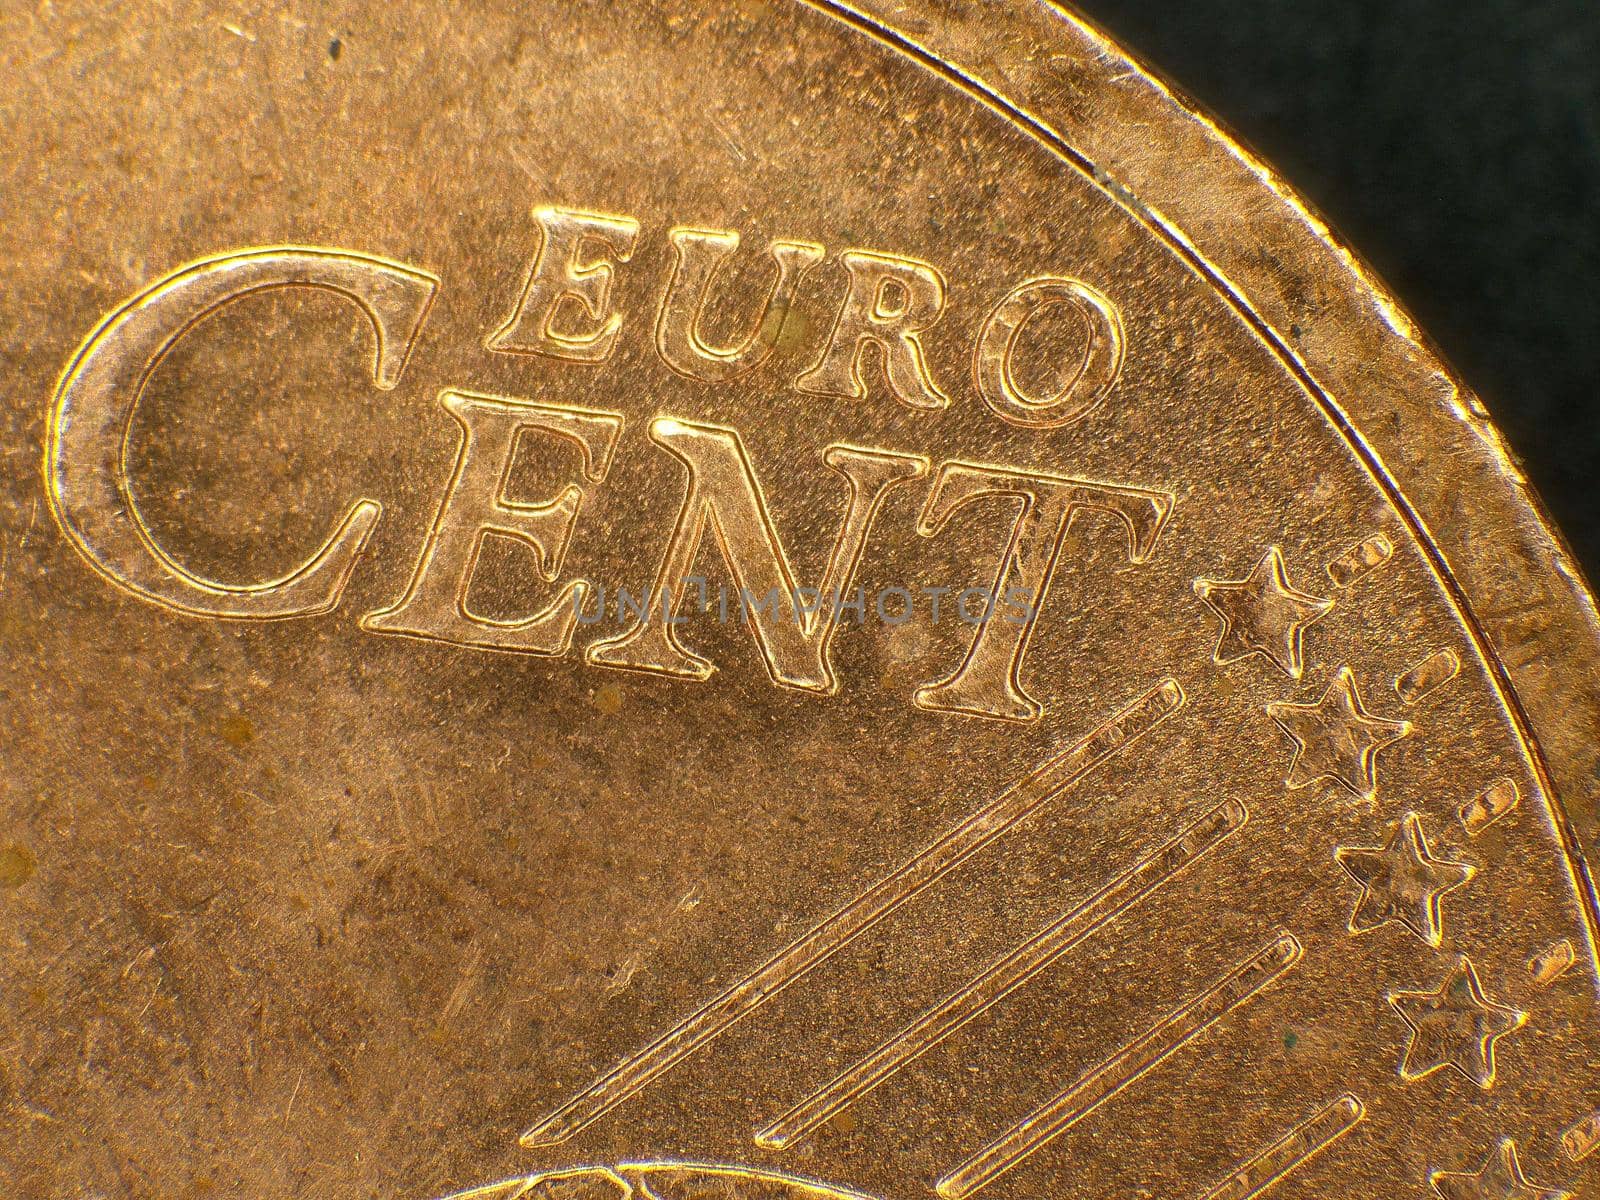 Euro coin in a closeup